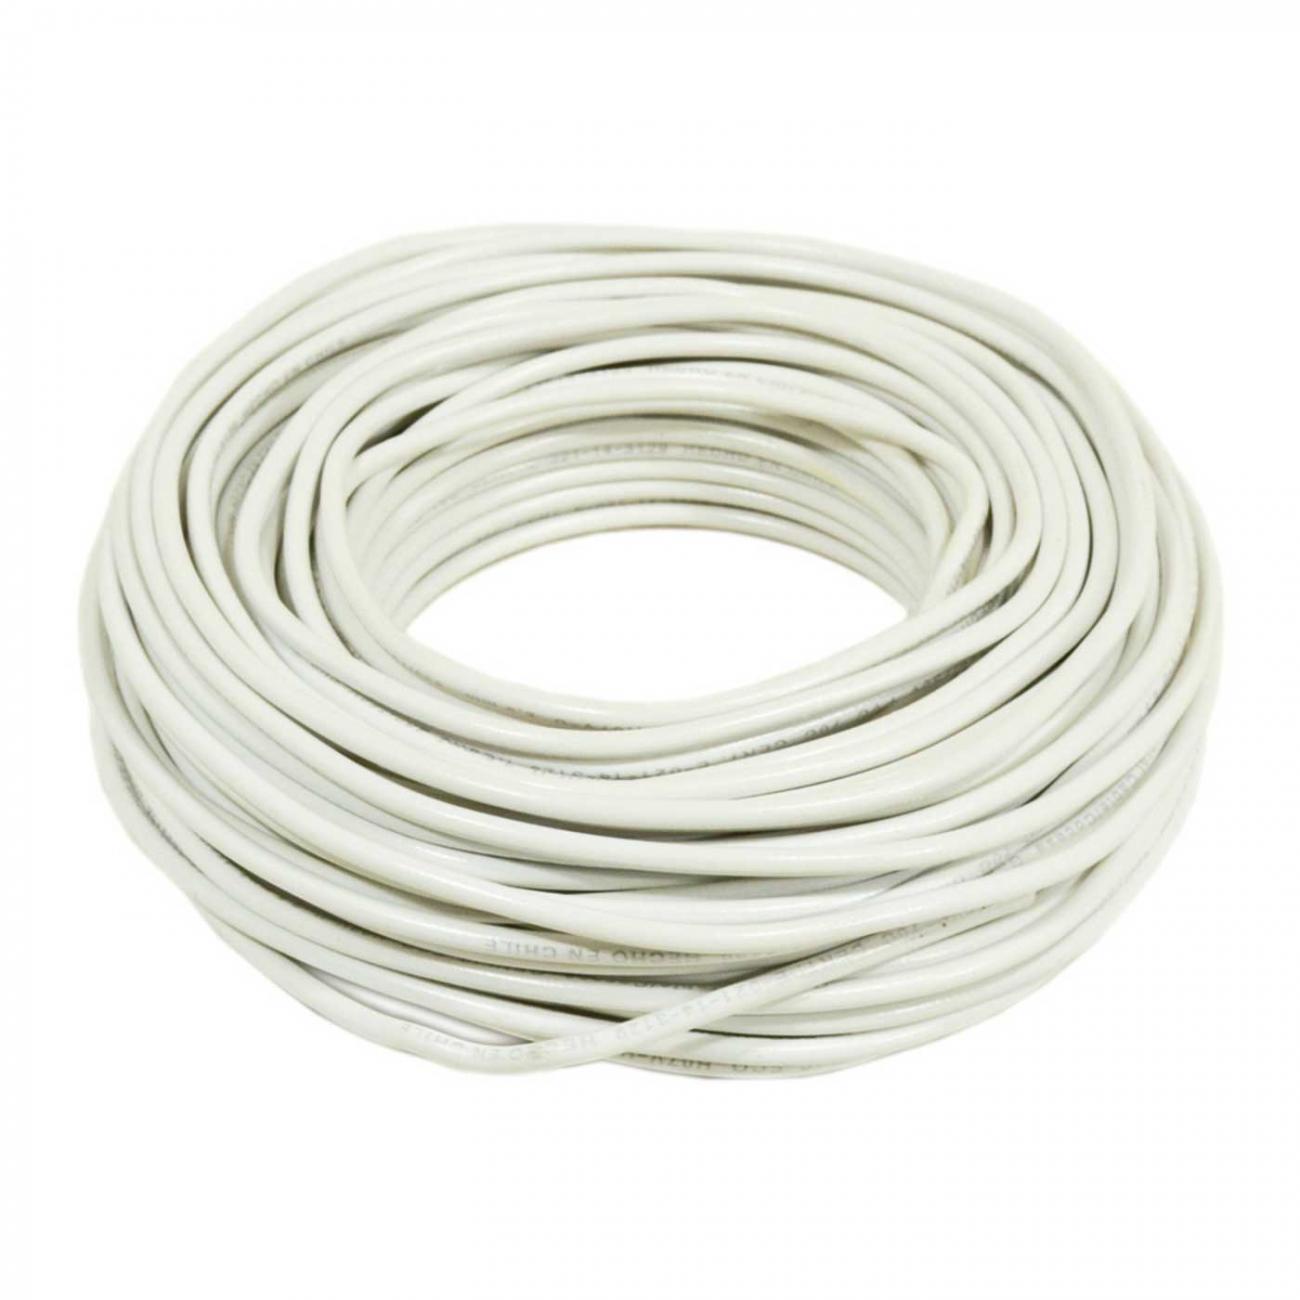 Cable Evaflex 1,5 mm2 blanco rollo 50 m